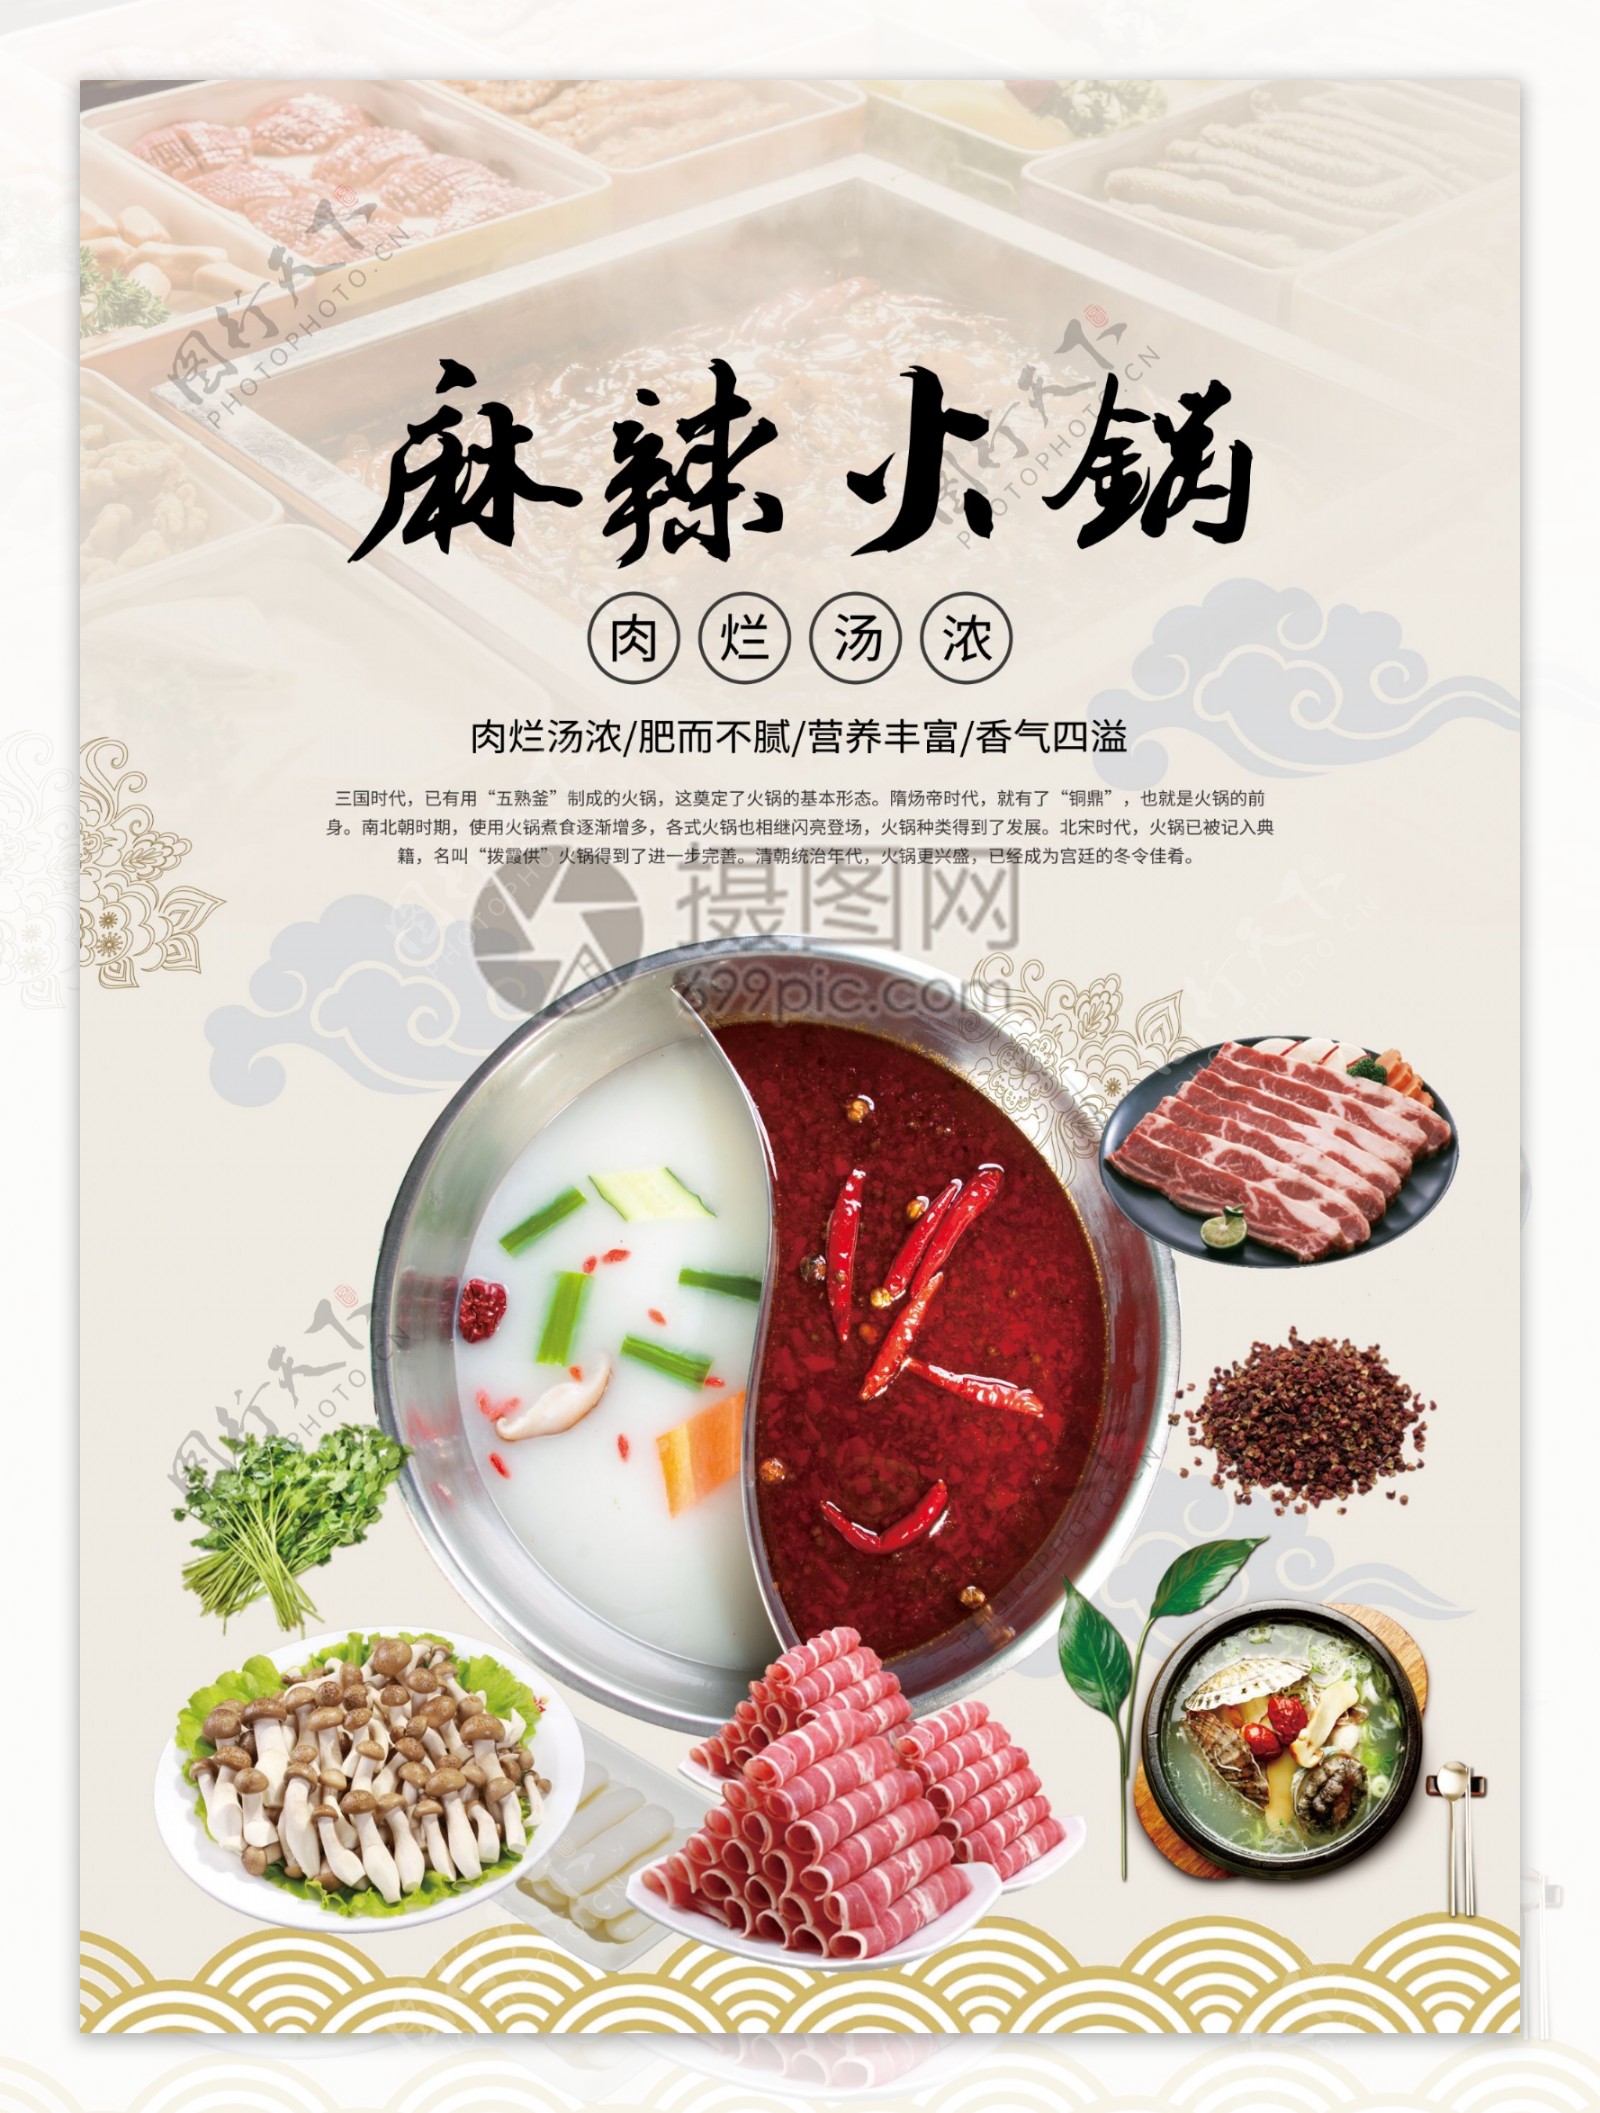 麻辣火锅餐厅宣传海报